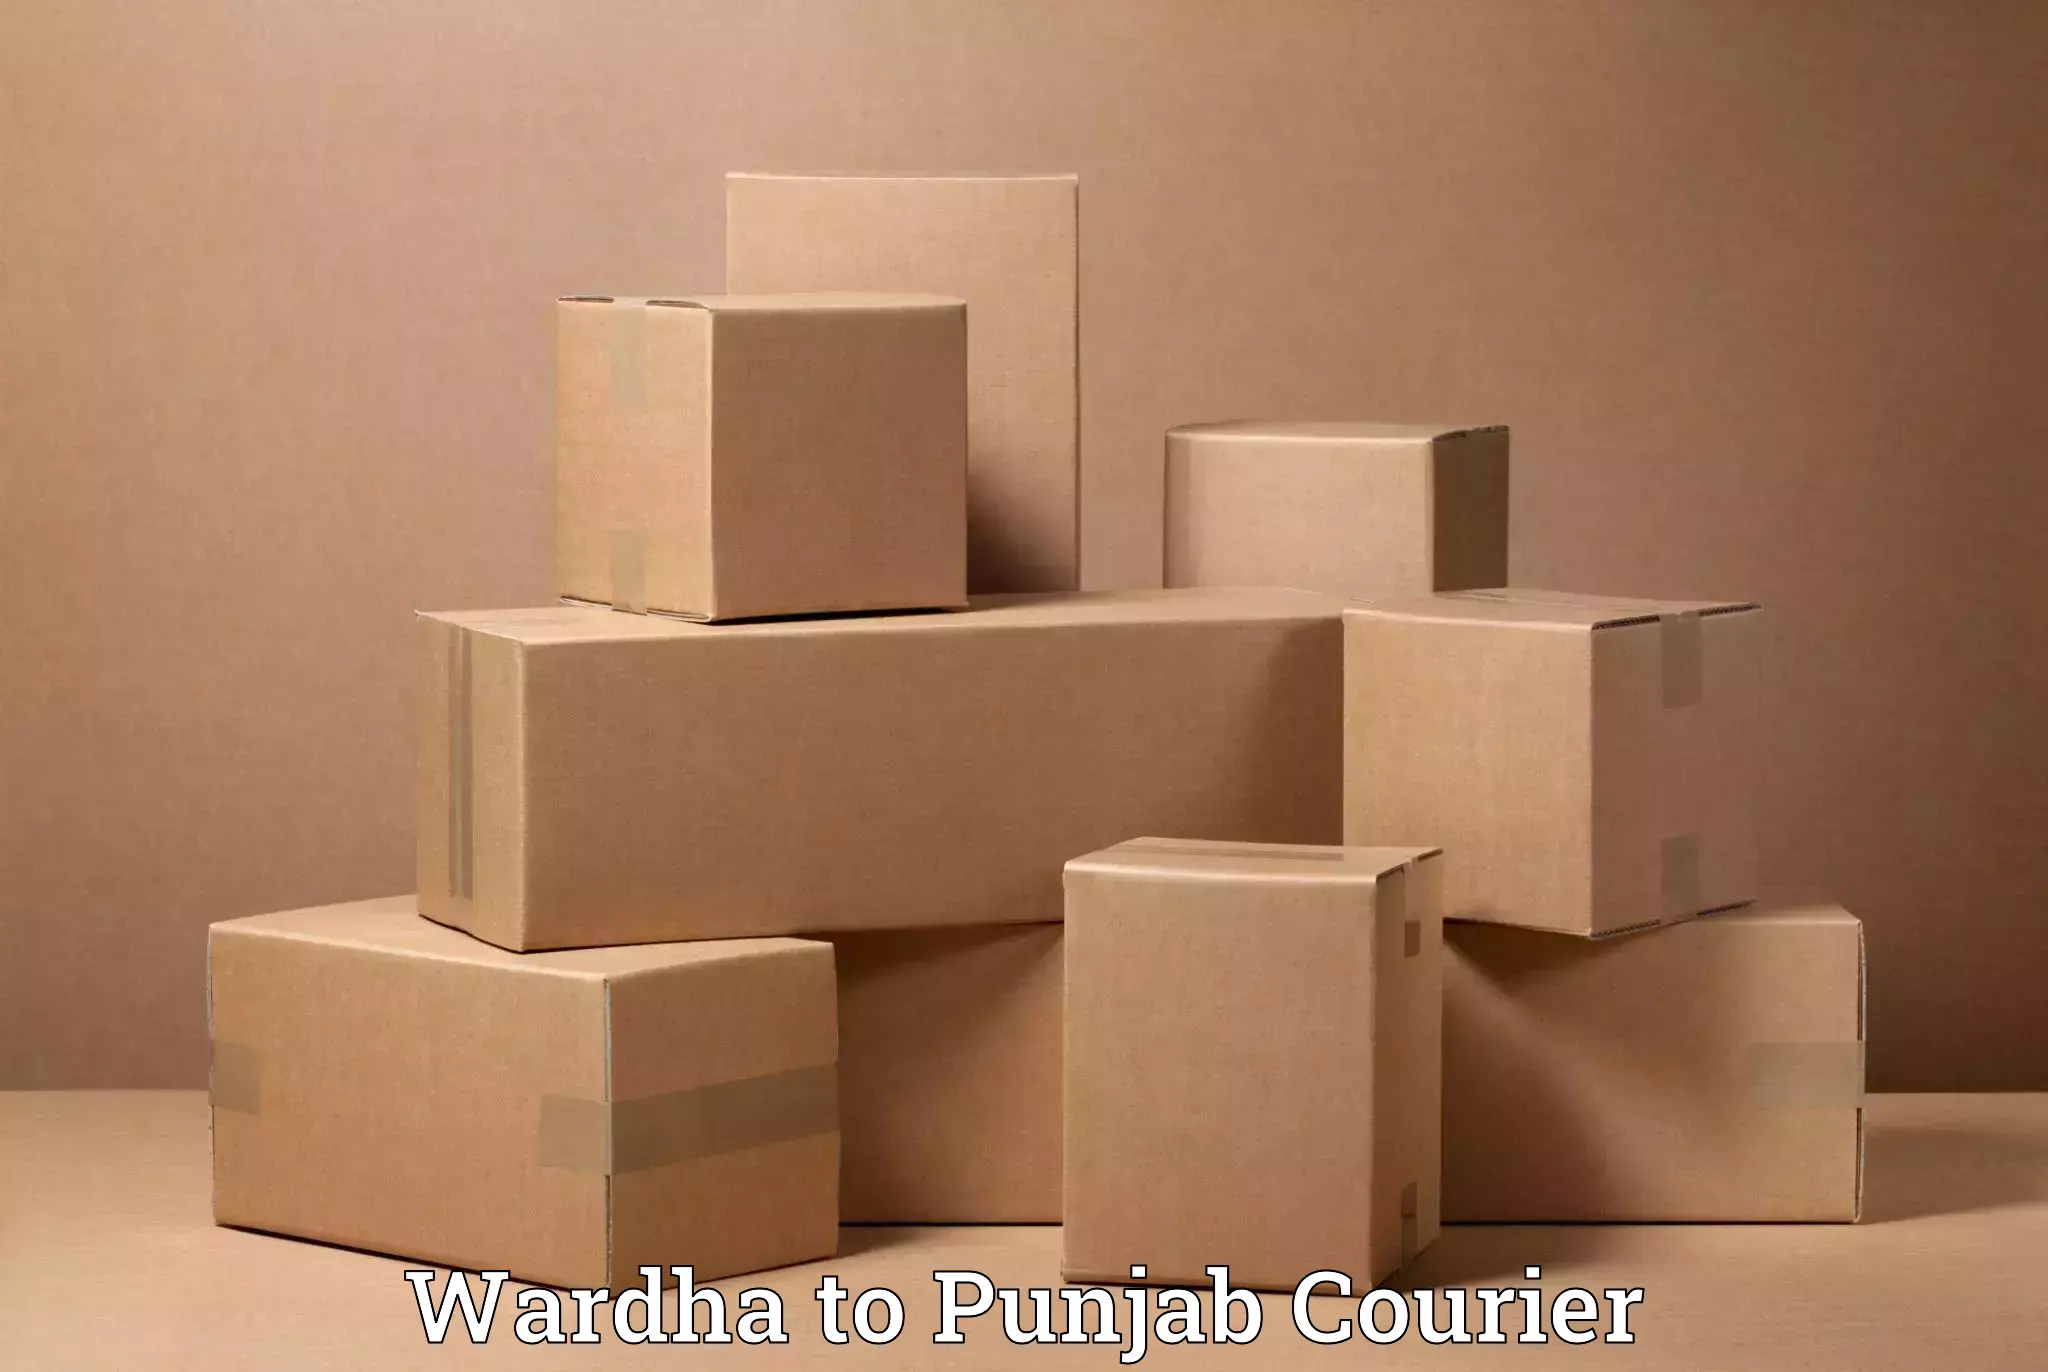 Home goods moving company Wardha to Rupnagar